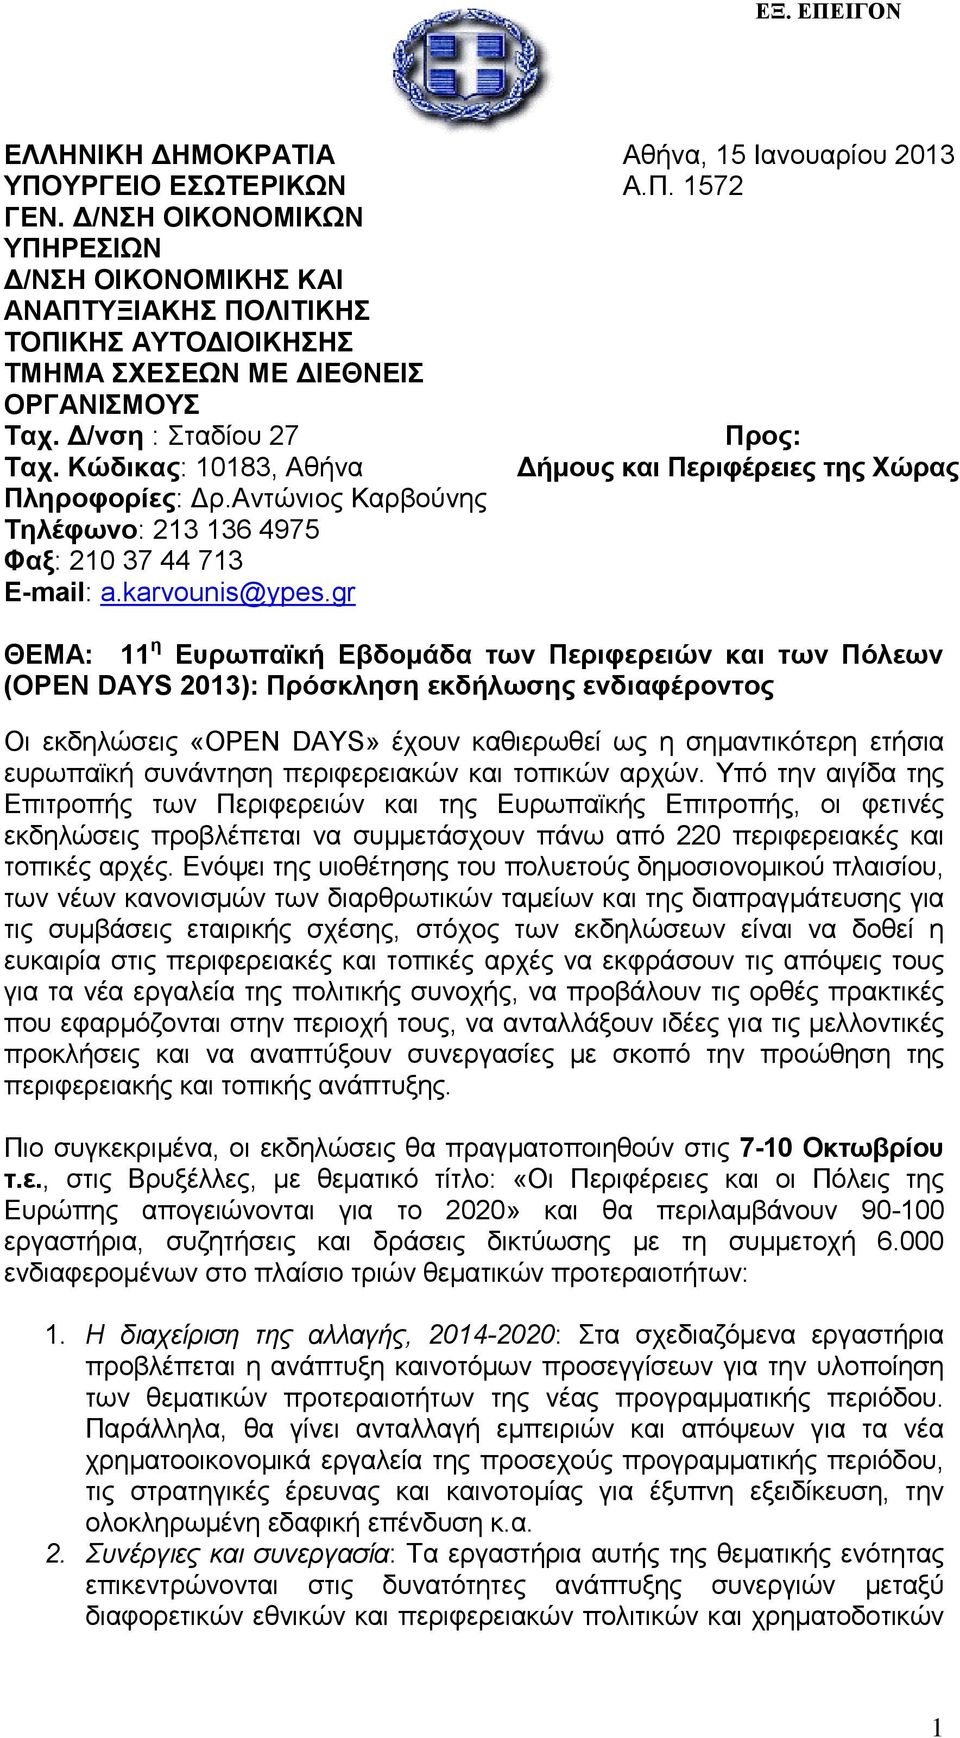 Αντώνιος Καρβούνης Τηλέφωνο: 213 136 4975 Φαξ: 210 37 44 713 E-mail: a.karvounis@ypes.gr Αθήνα, 15 Ιανουαρίου 2013 Α.Π.